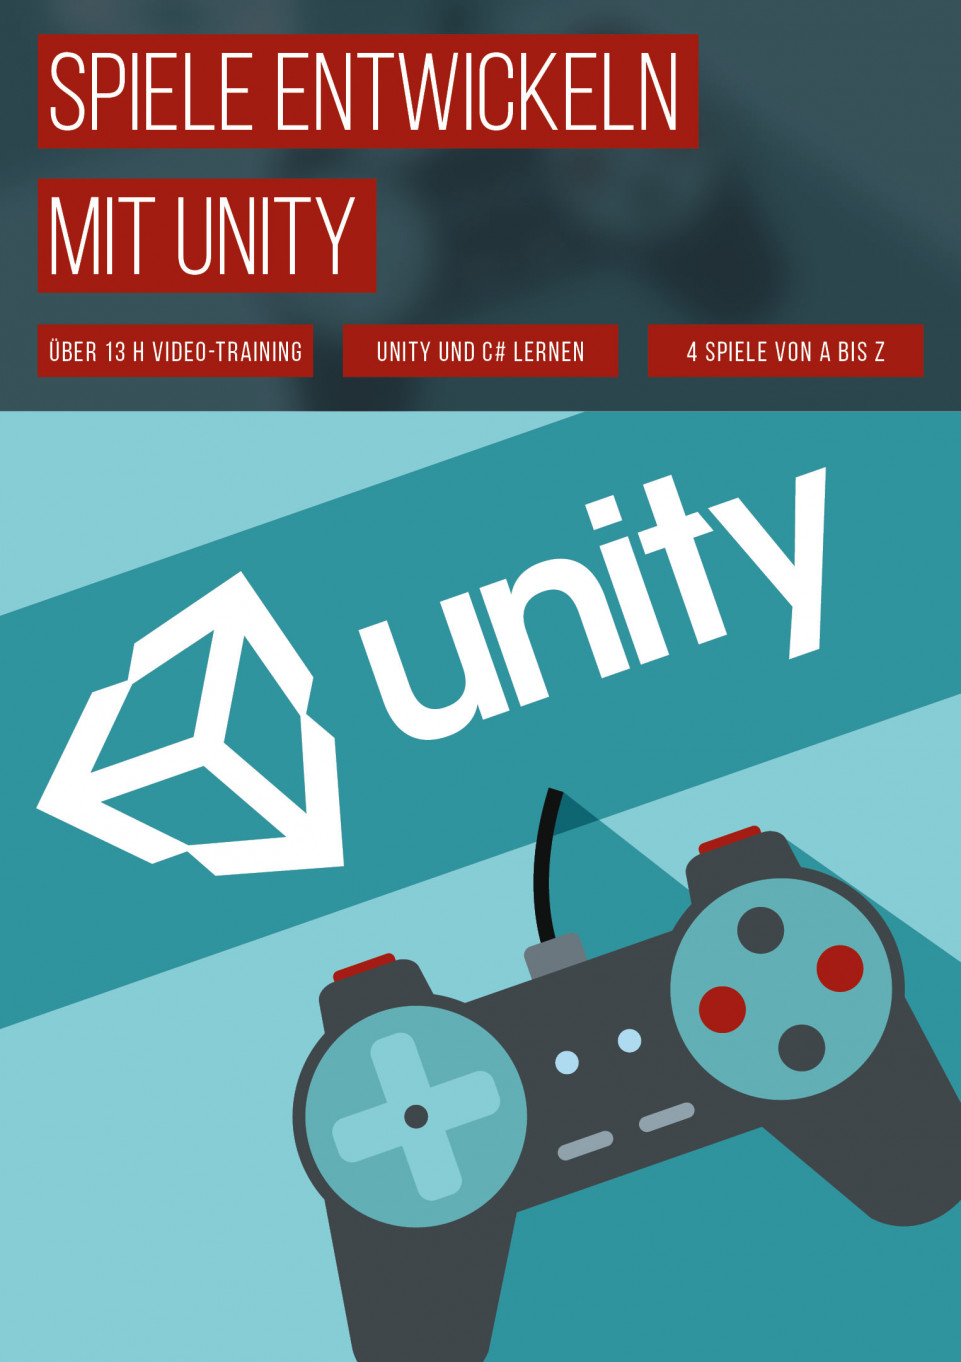 Spiele programmieren mit Unity – Tutorial (deutsch)